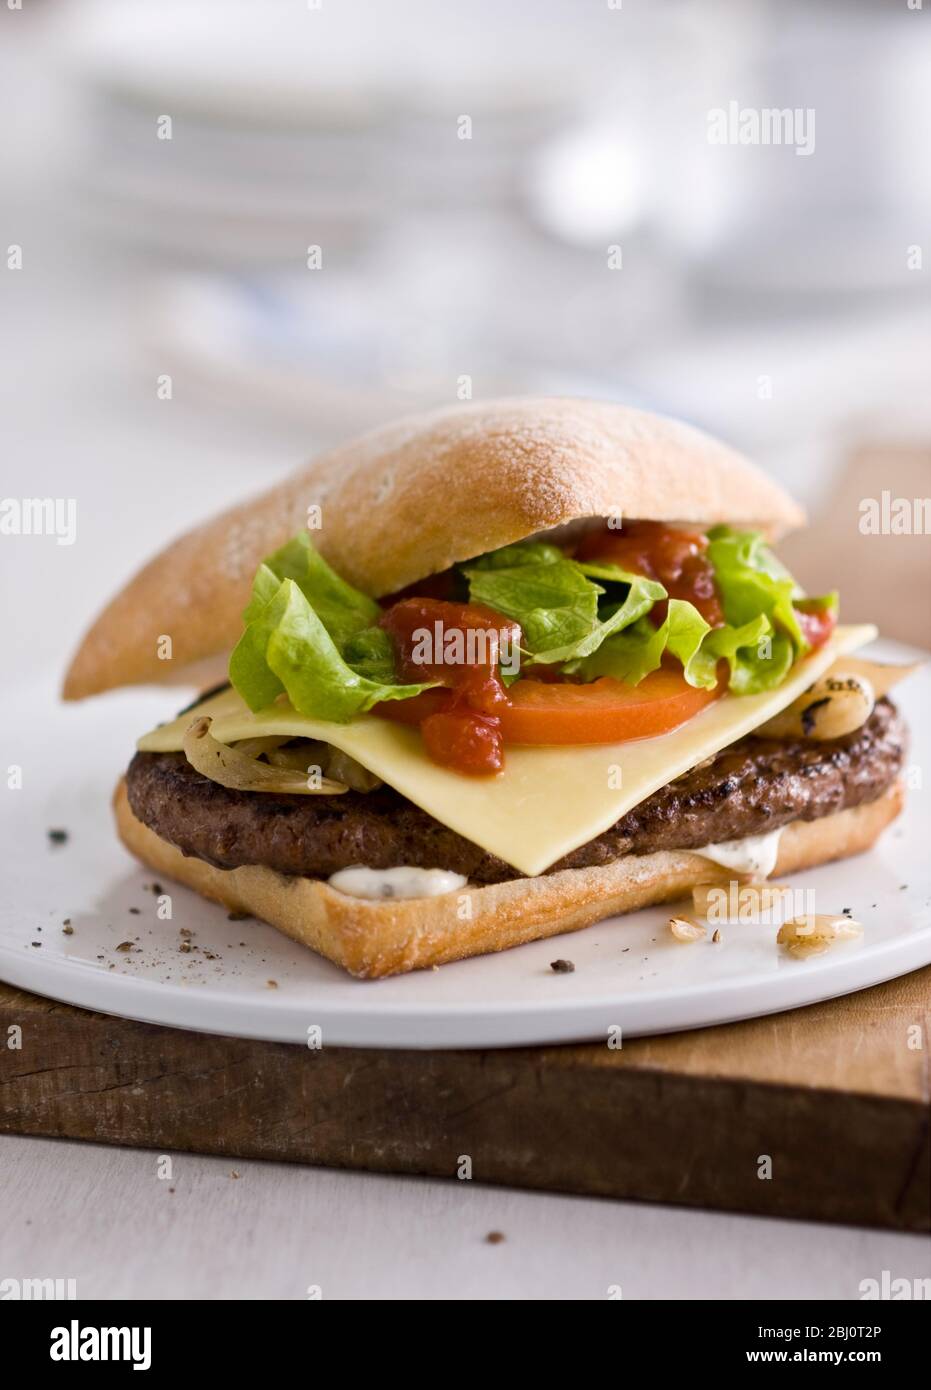 Gournet Cheeseburger mit Salat und Tomaten auf Ciabatta Brötchen auf flachem weißen Porzellanteller. - Stockfoto